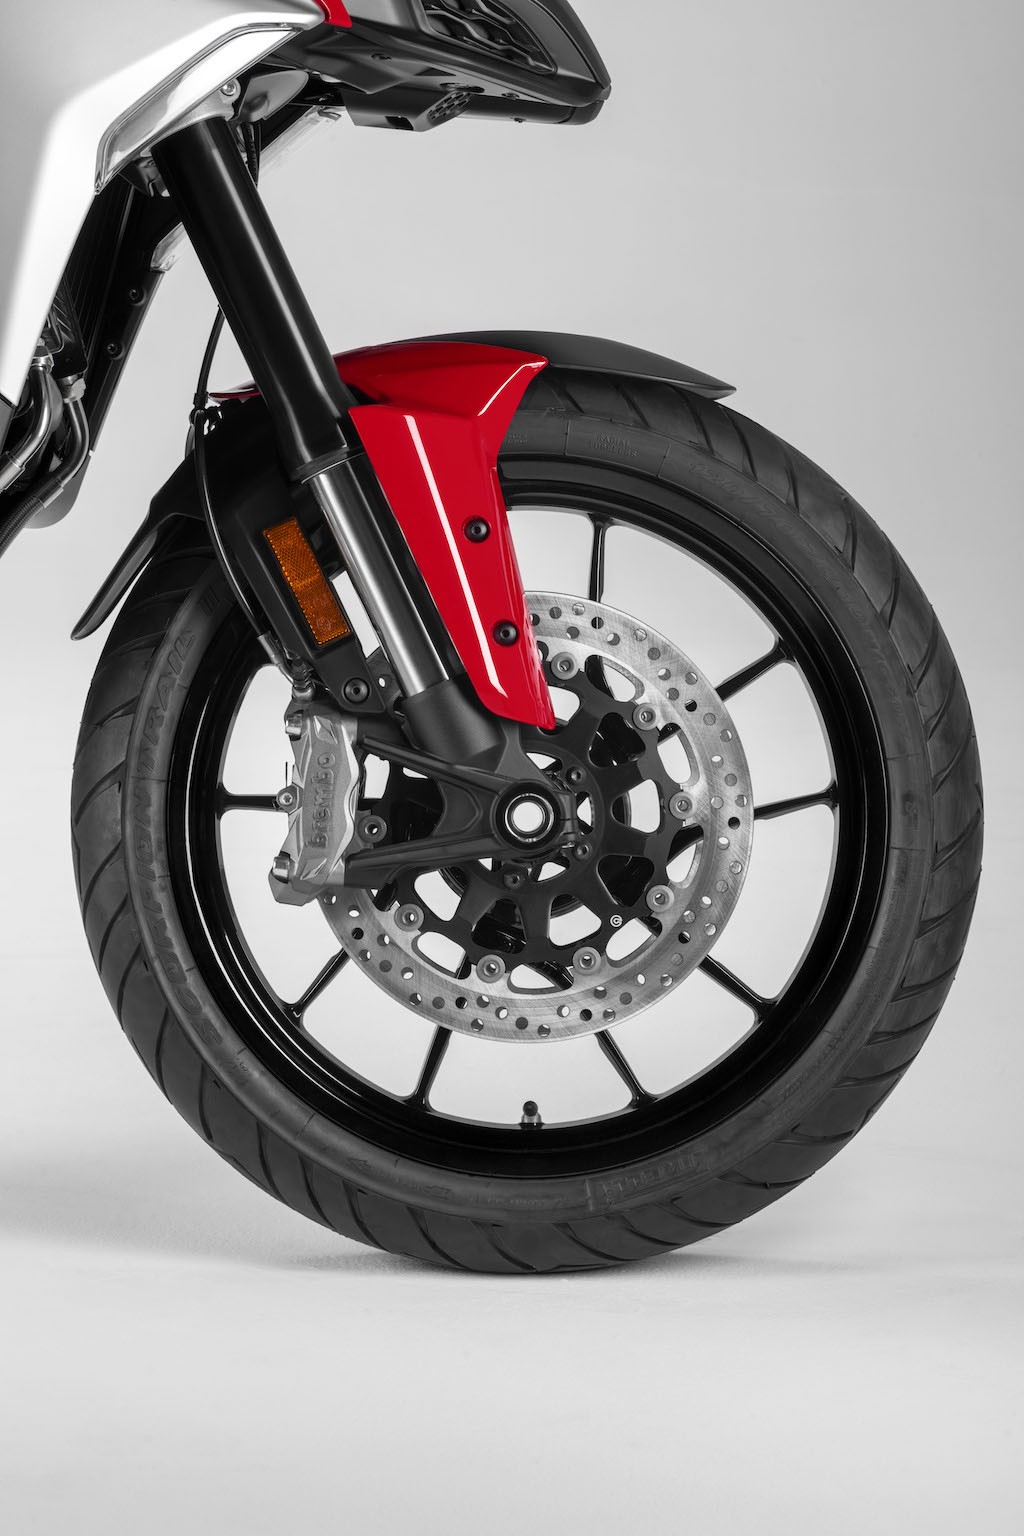 Ducati Multistrada V4 chính thức “trình làng”, tạm thời là chiếc mô tô adventure hiện đại nhất Thế giới ảnh 13